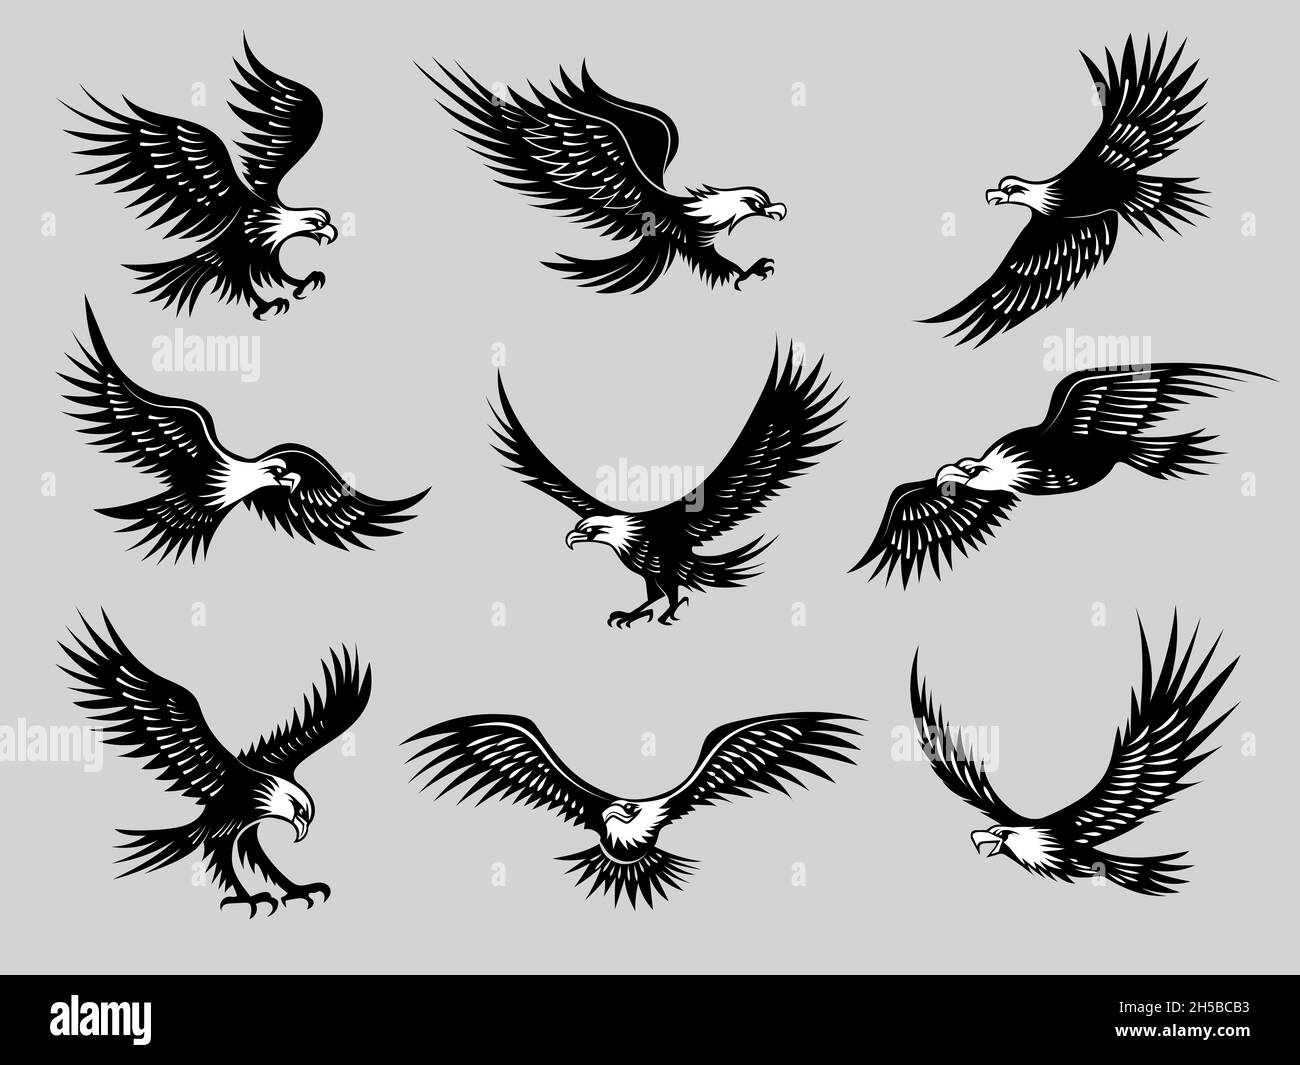 Fliegende Adler. Silhouetten von Vögeln wilden Falken Freiheit Tiere für Motorrad-Embleme jüngsten Vektor-Illustrationen Stock Vektor